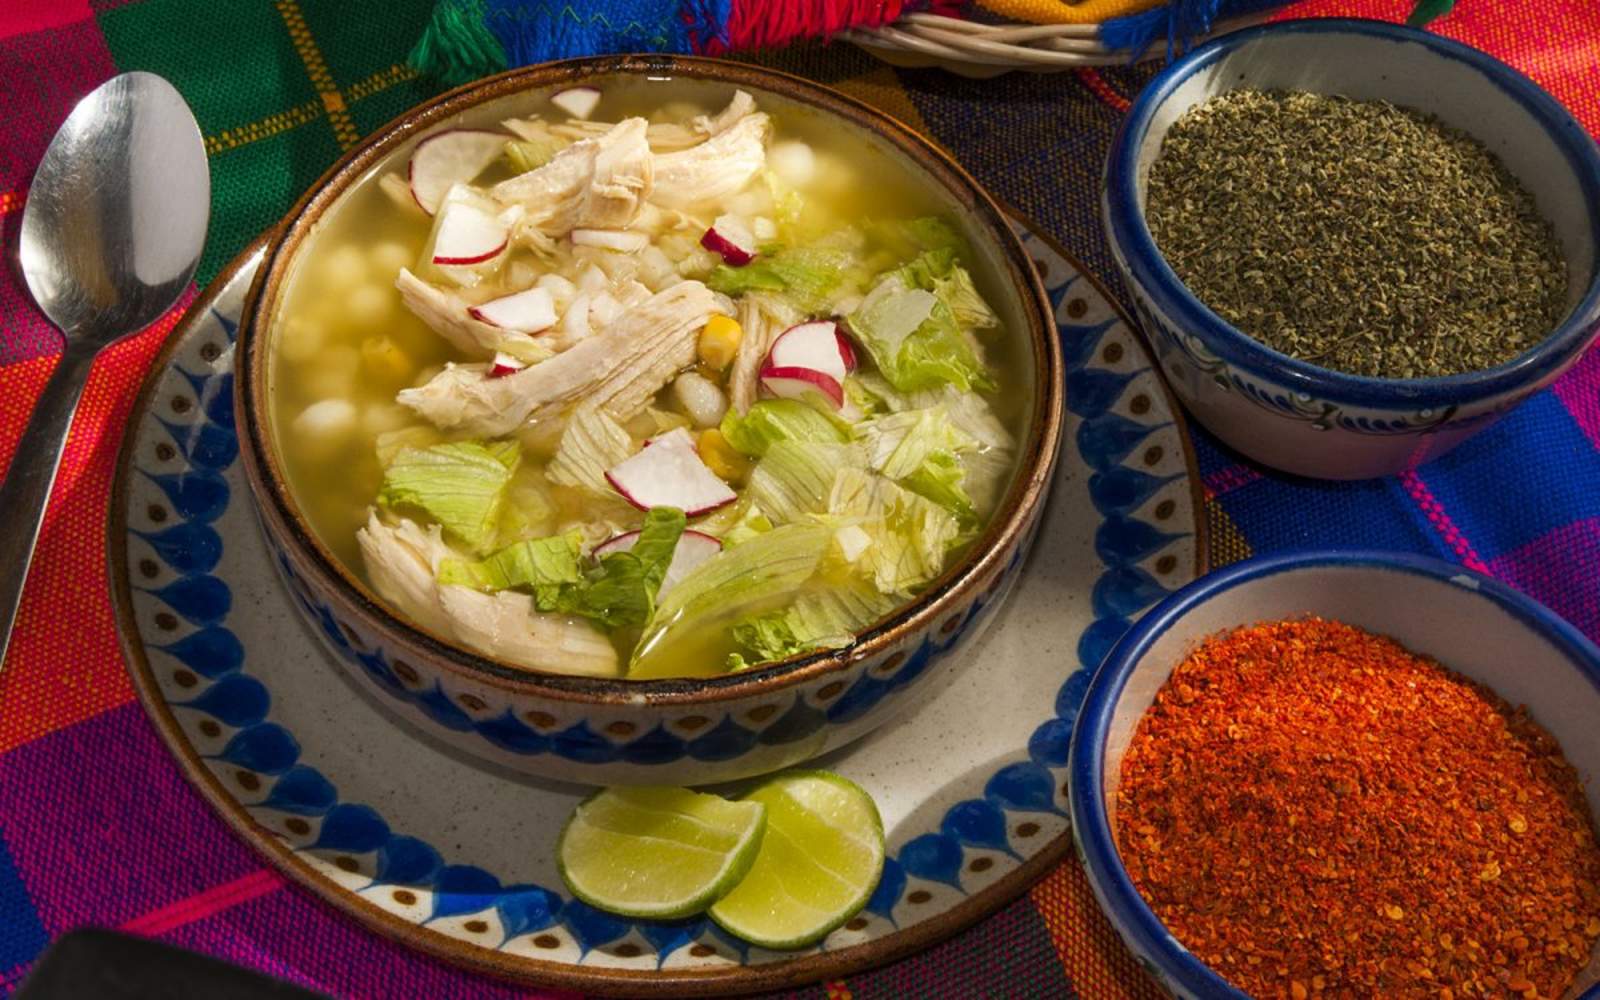 Comida mexicana tendrá su propio museo en Los Ángeles